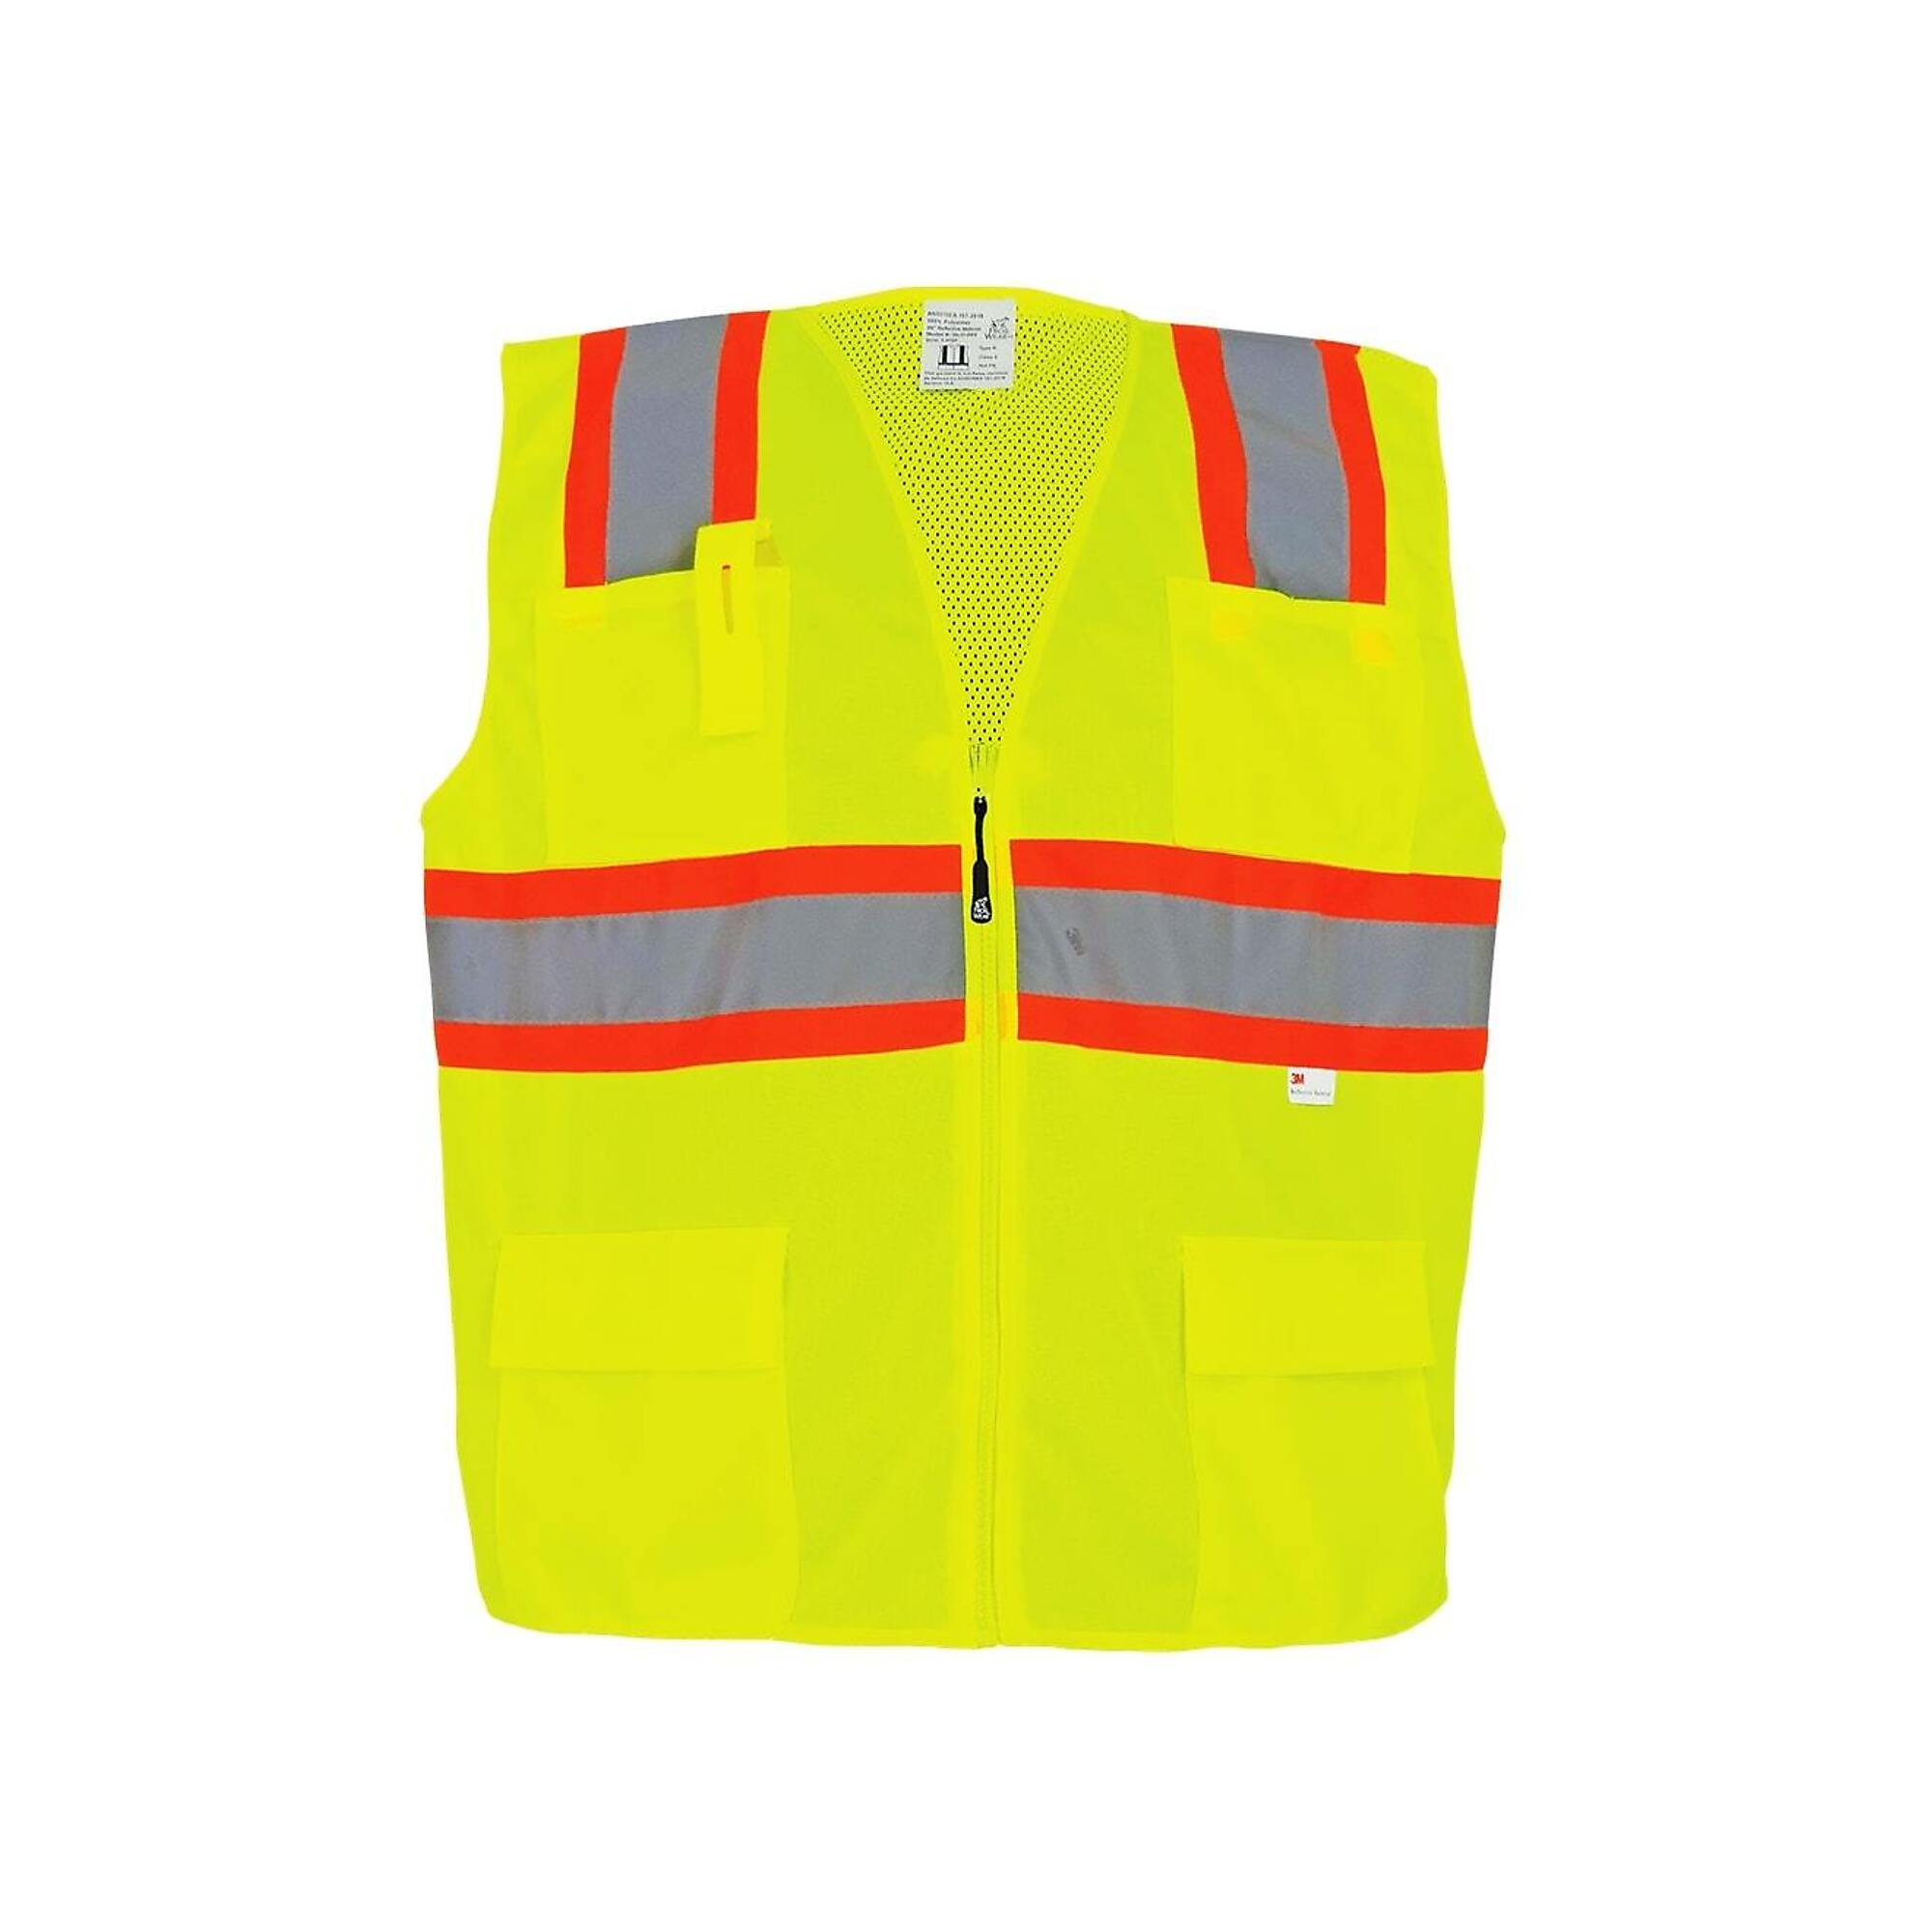 FrogWear Surveyors Vest, L, Yellow, Model GLO-003-L